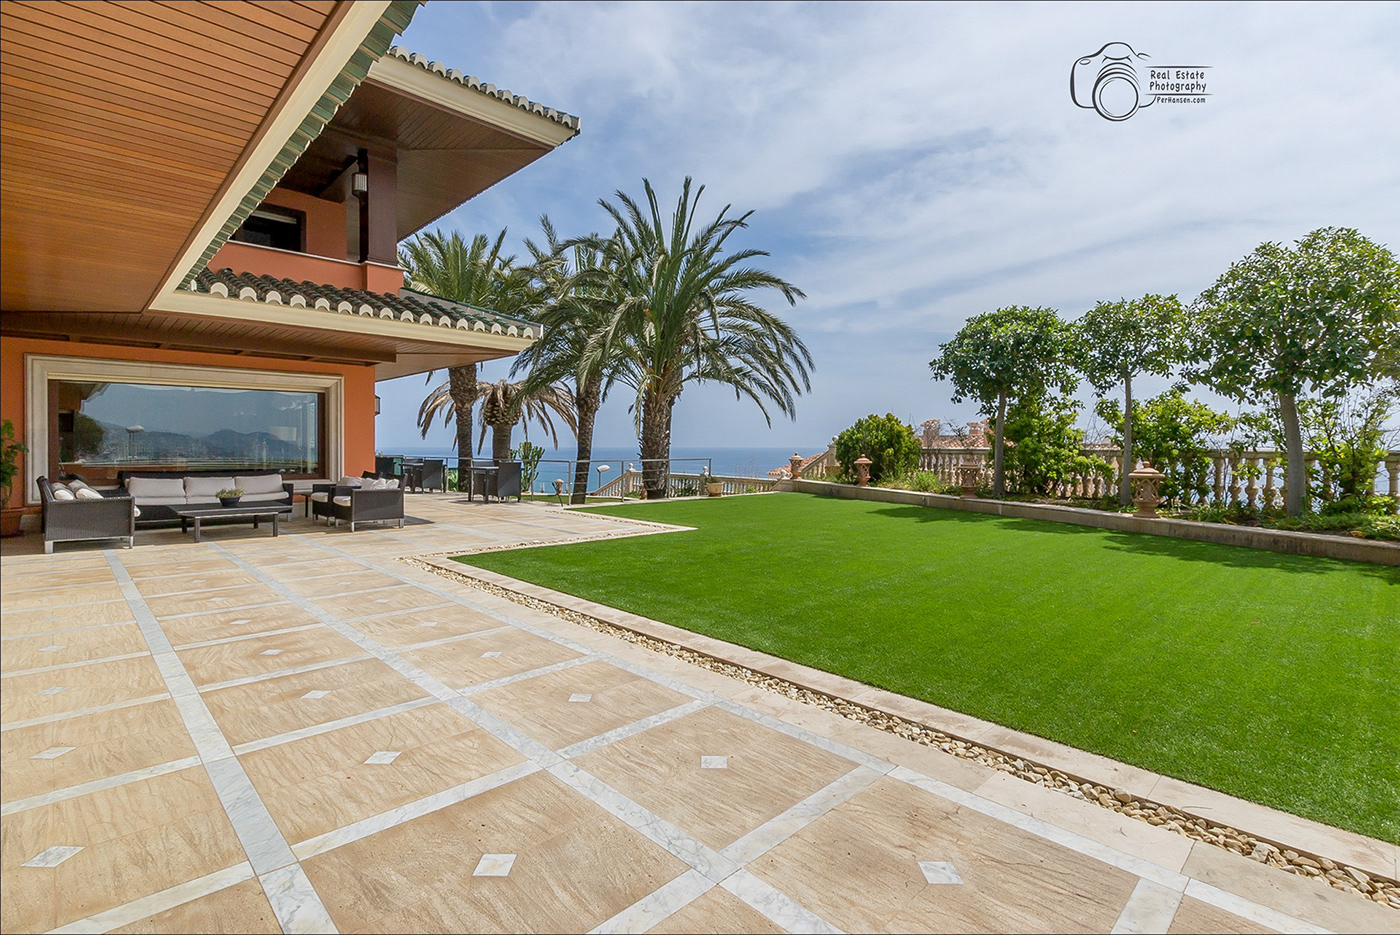 Benalmadena costa del sol Fuengirola malaga Marbella mijas real estate real estate photography spain TORREMOLINOS